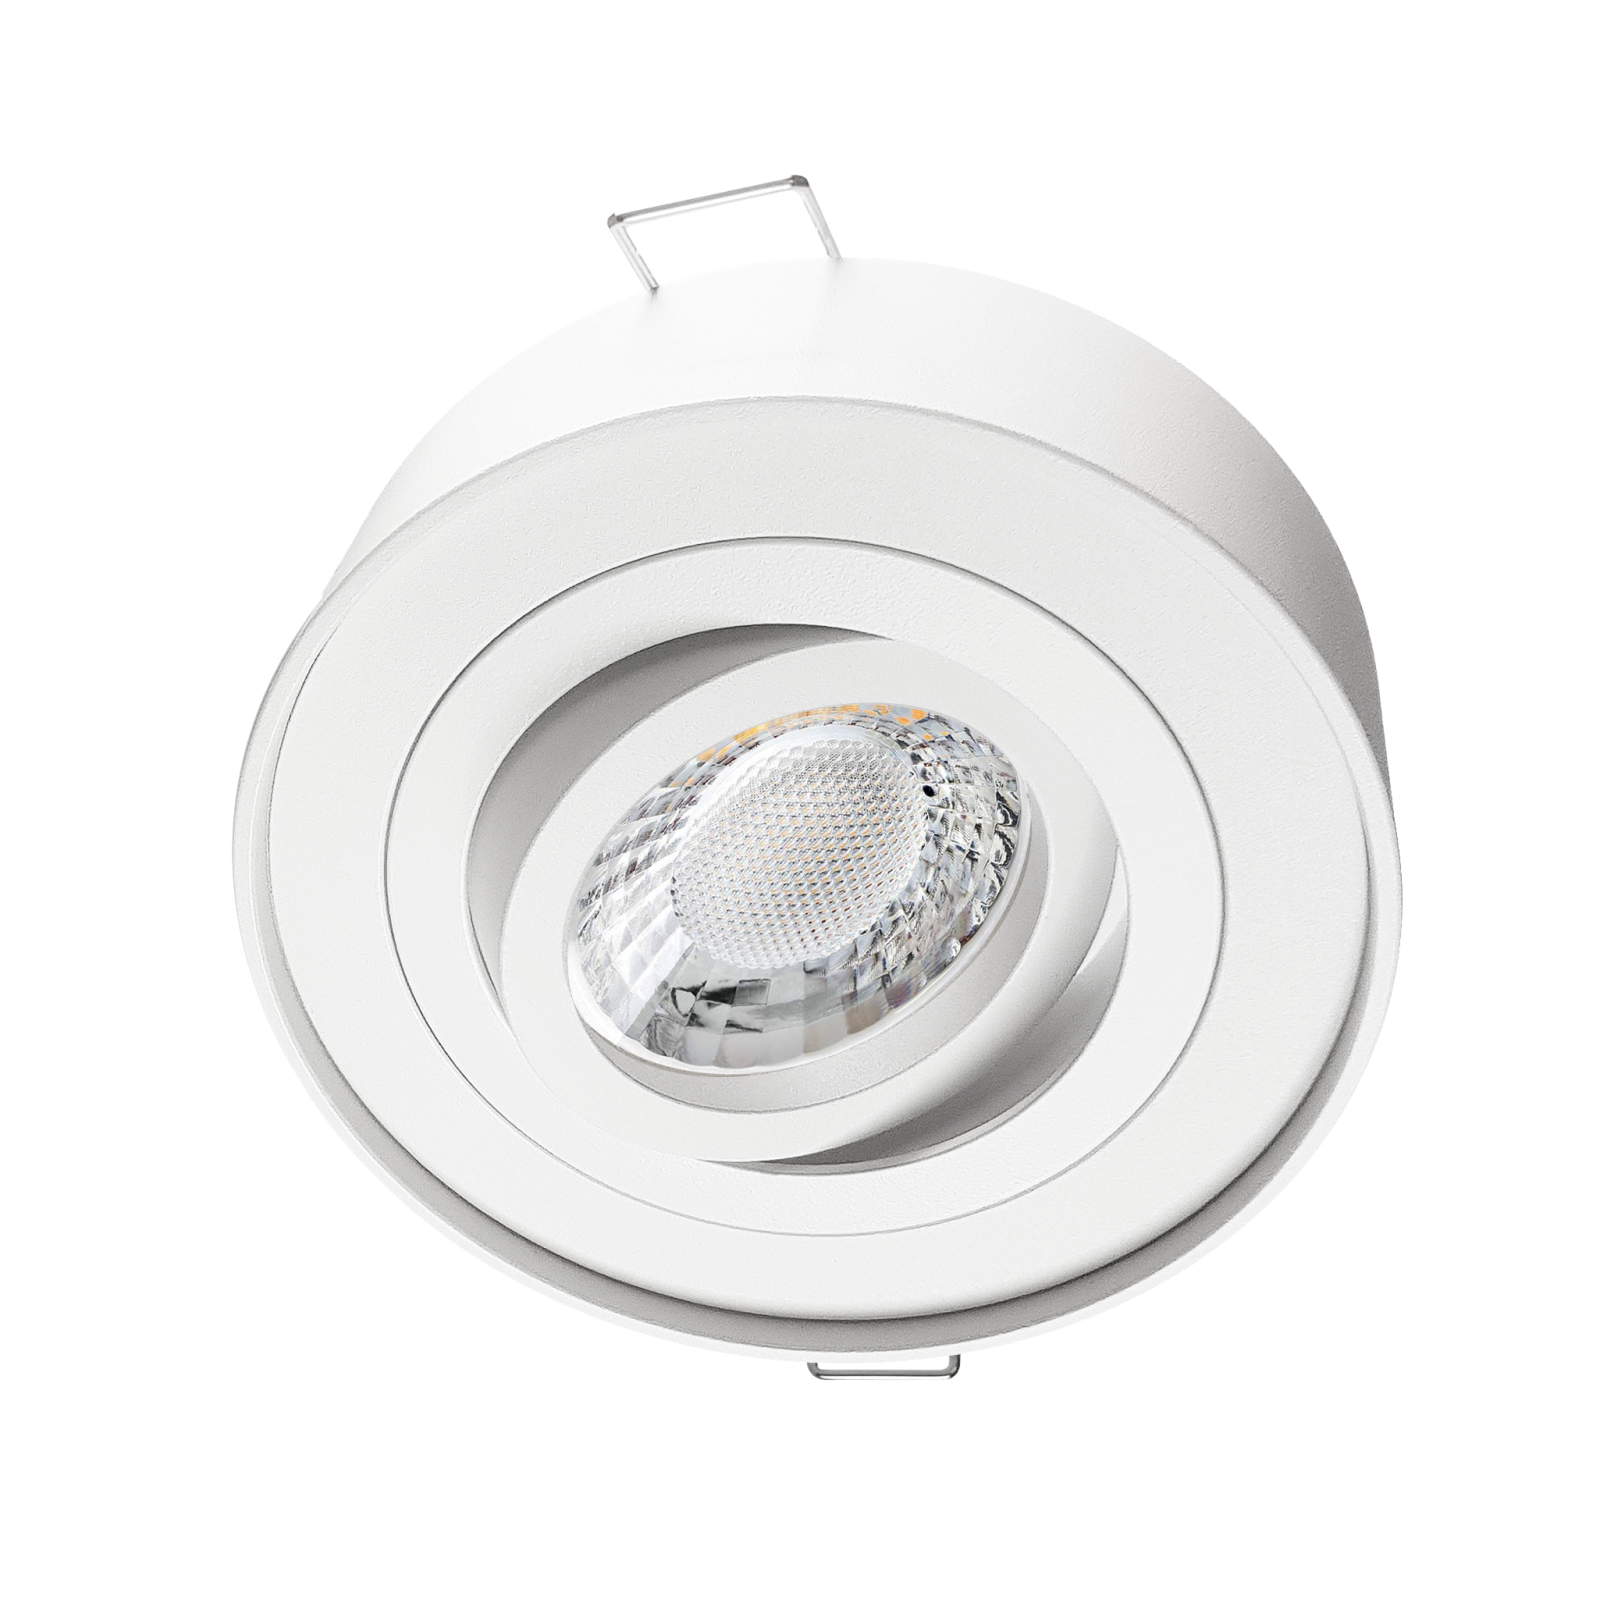 LED Aufbau Einbaustrahler weiß pulverbeschichtet | Runder Einbauspot | 360° schwenkbar | Lochmaß Ø 85mm - 90mm | geringe Einbautiefe 38mm | GU10 230V 